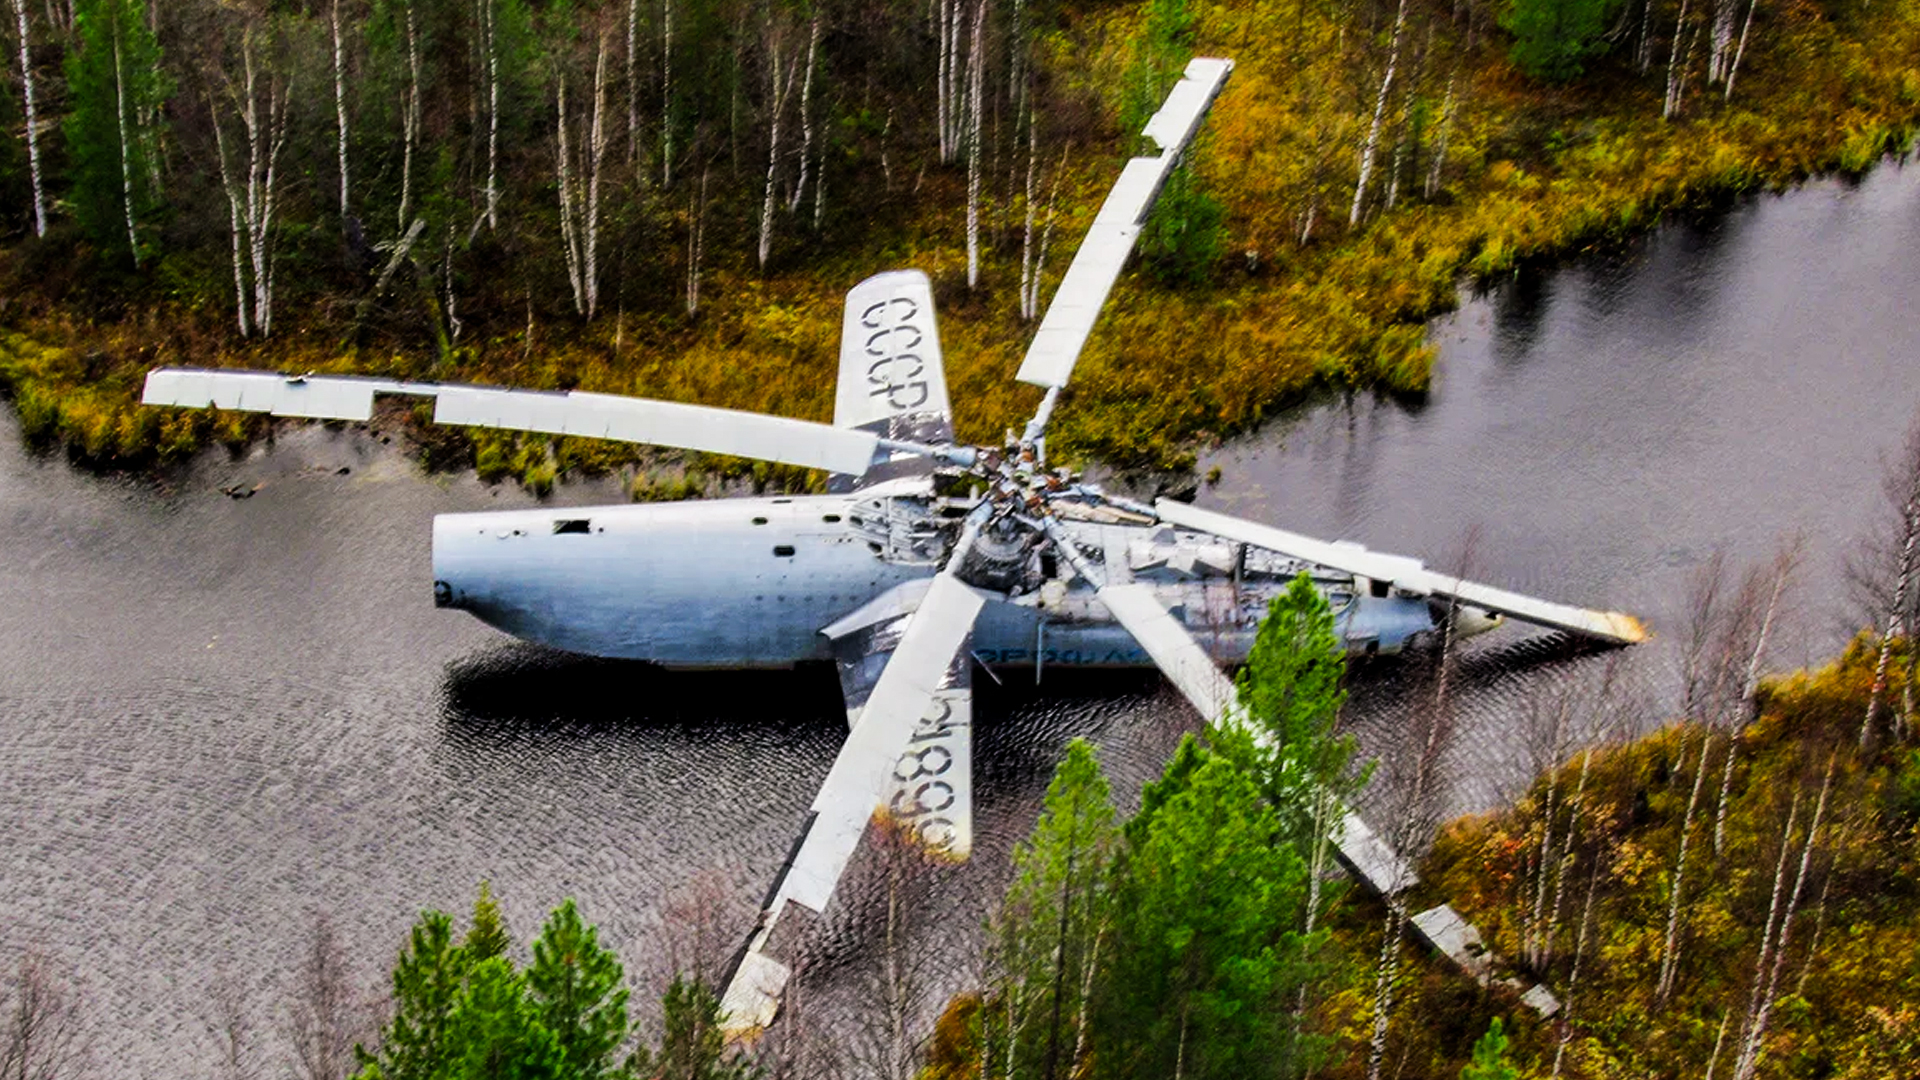 Вертолет ми 6 в болоте фото